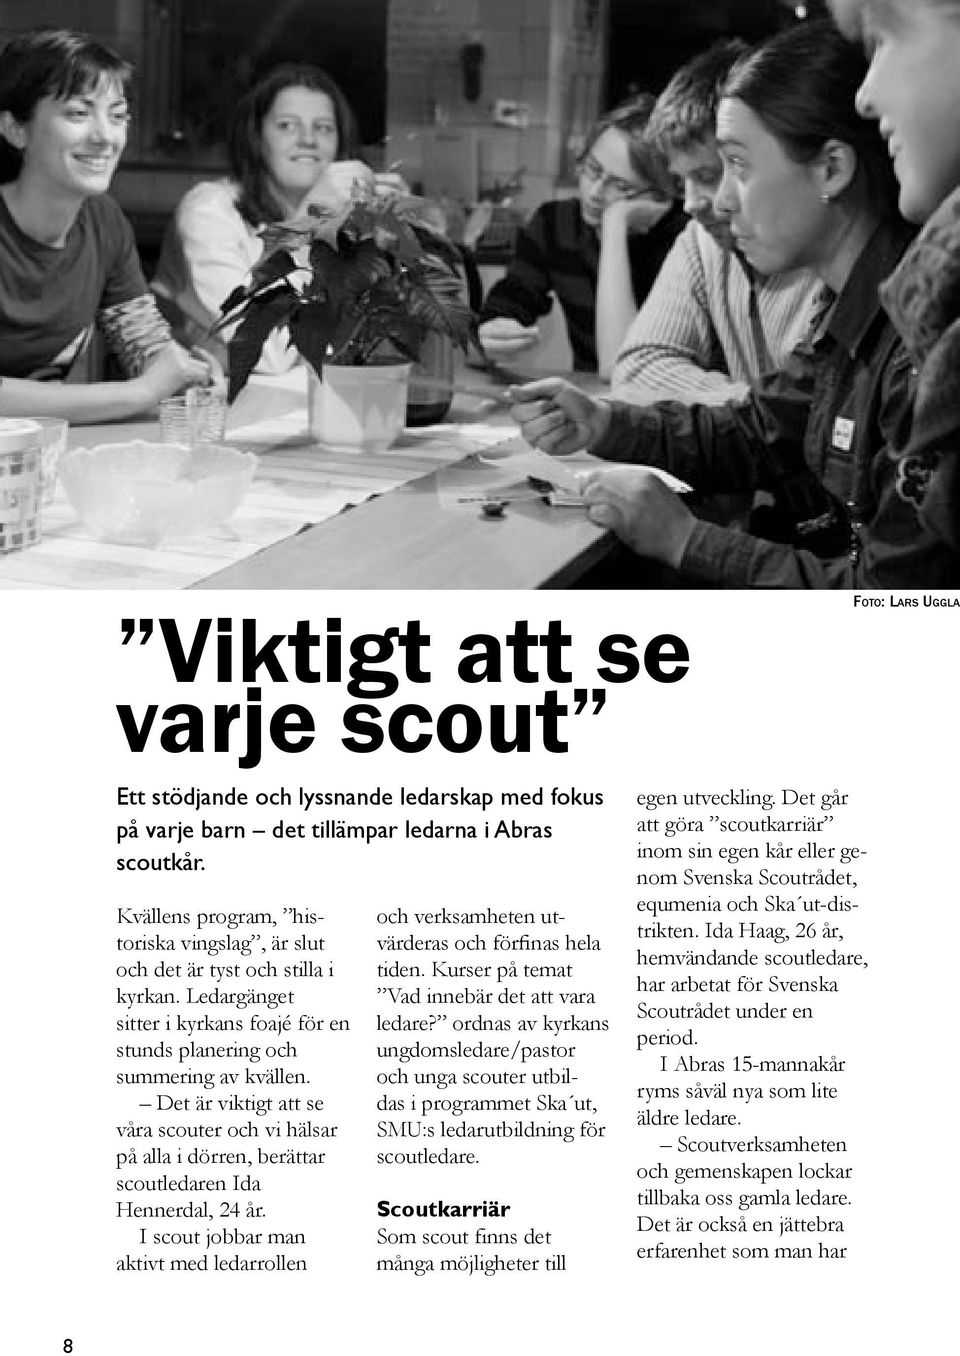 Det är viktigt att se våra scouter och vi hälsar på alla i dörren, berättar scoutledaren Ida Hennerdal, 24 år.